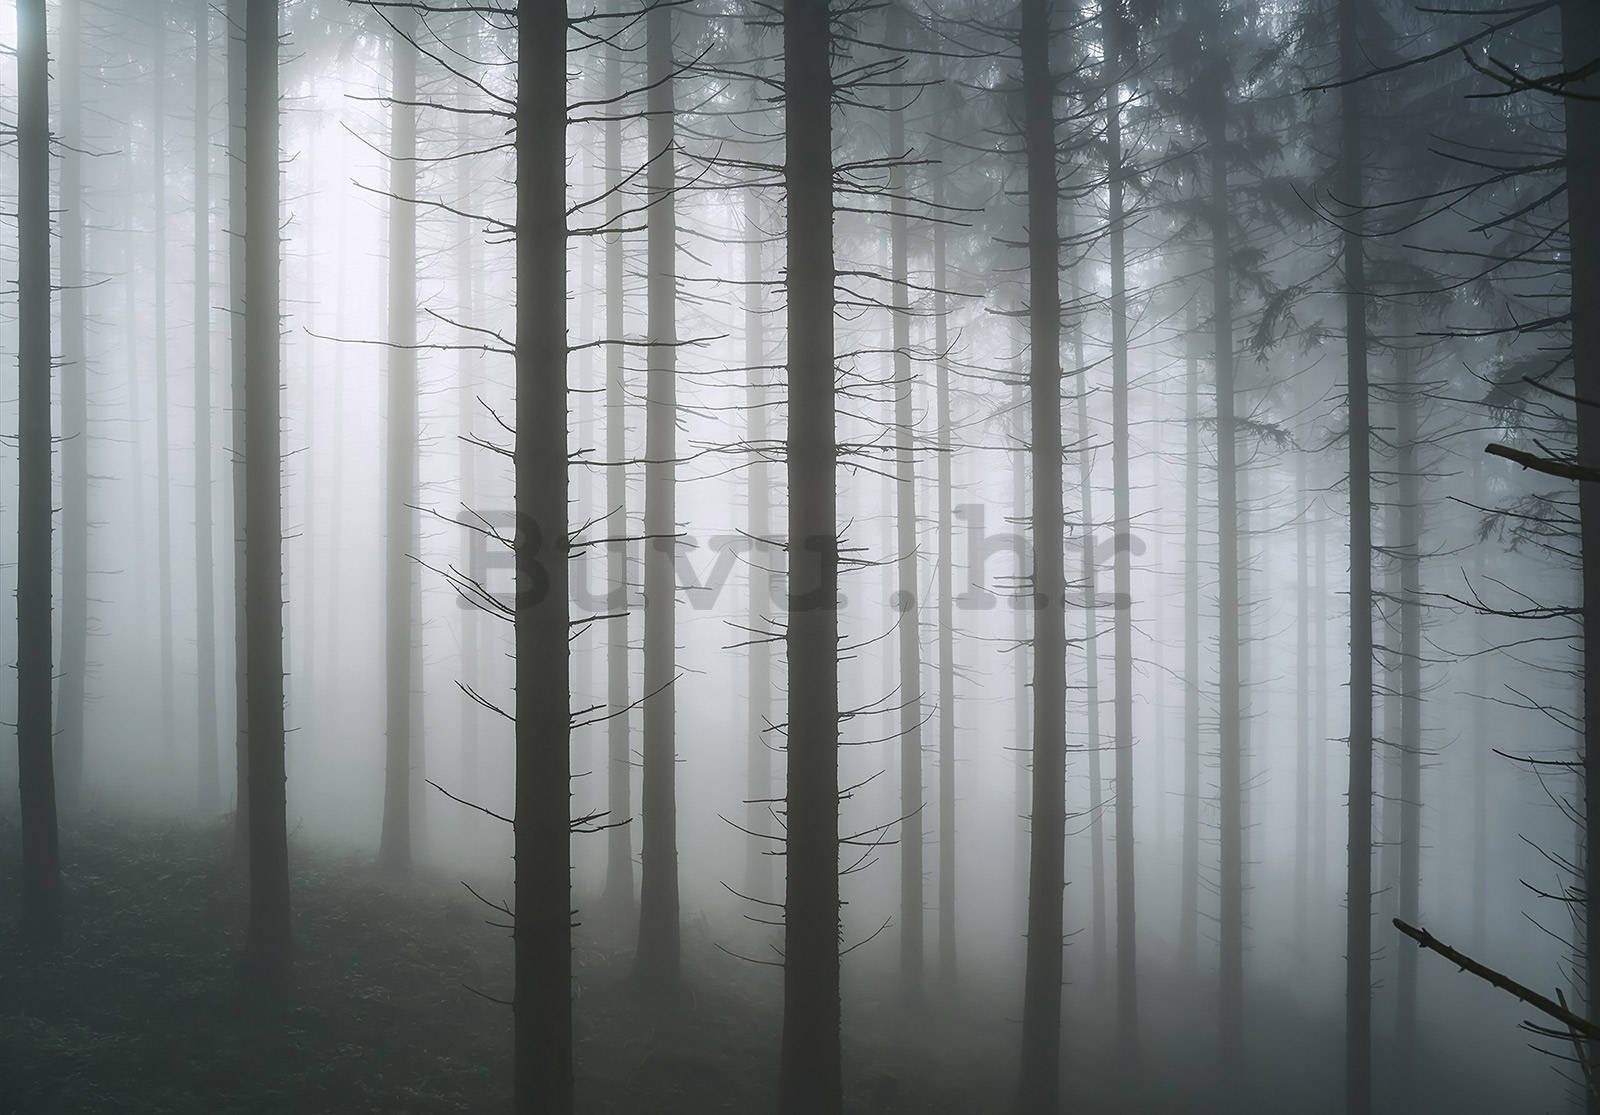 Vlies foto tapeta: Ukleta šuma (1) - 416x254 cm